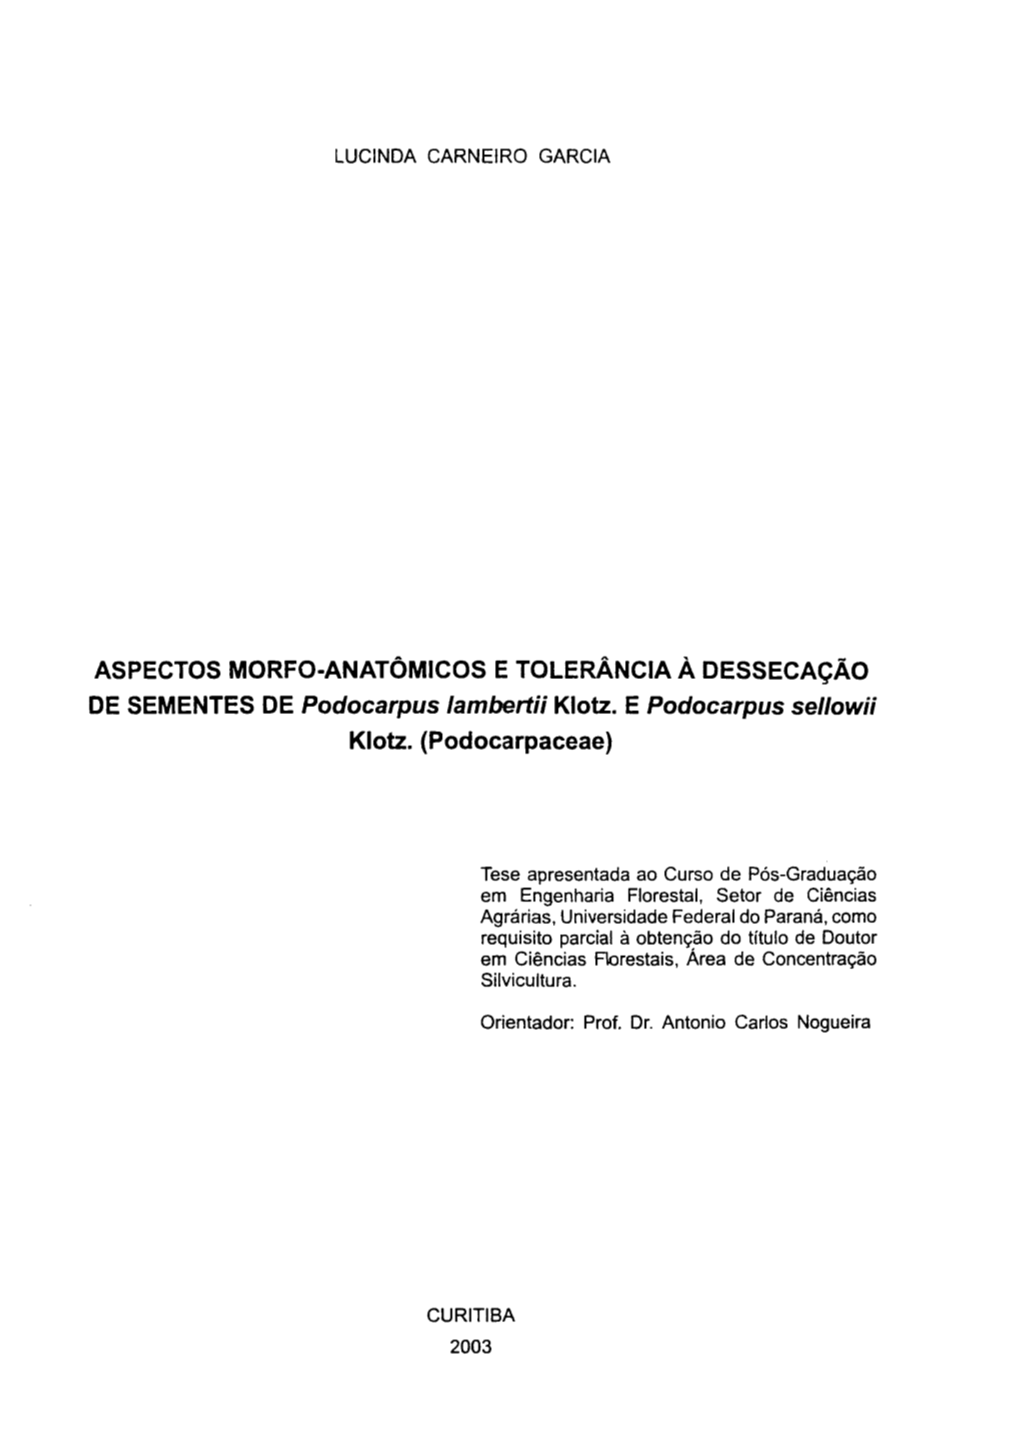 ASPECTOS MORFO-ANATÔMICOS E TOLERÂNCIA À DESSECAÇÃO DE SEMENTES DE Podocarpus Lambertii Klotz